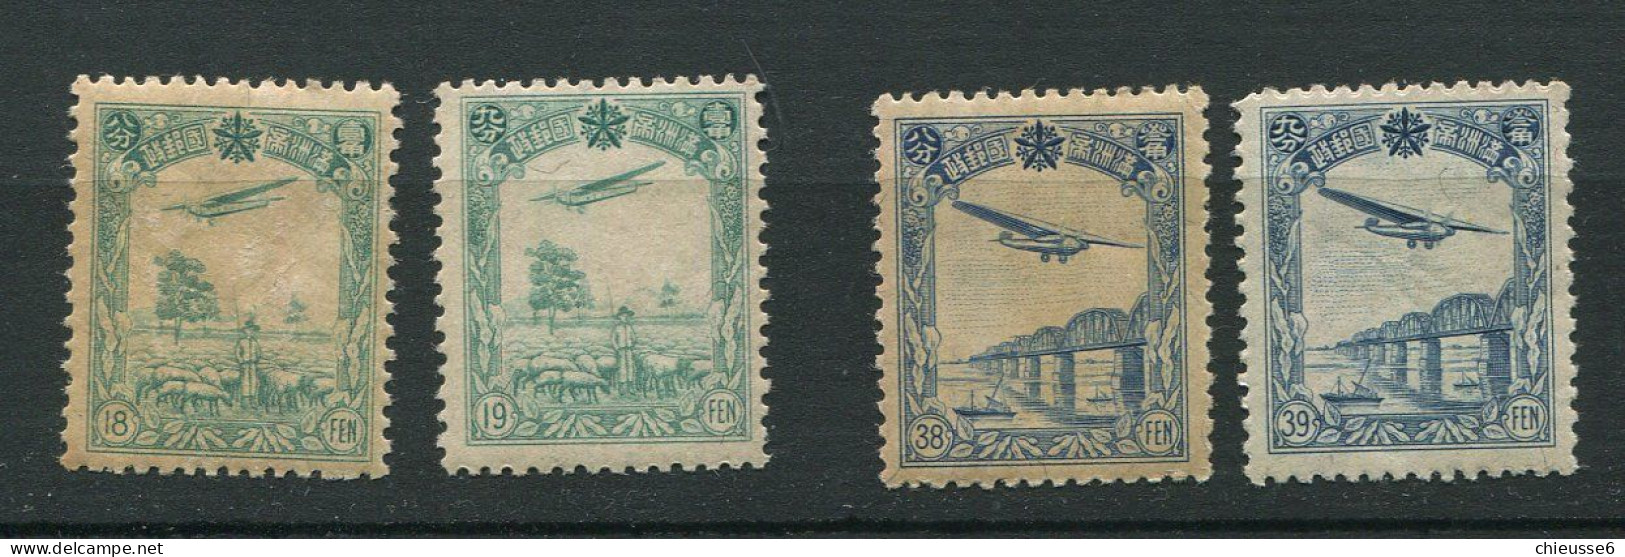 Mandchourie ** PA 1 à 4 (n° 2 Adhérences Au Dos)  - Avion En Vol - Mandchourie 1927-33